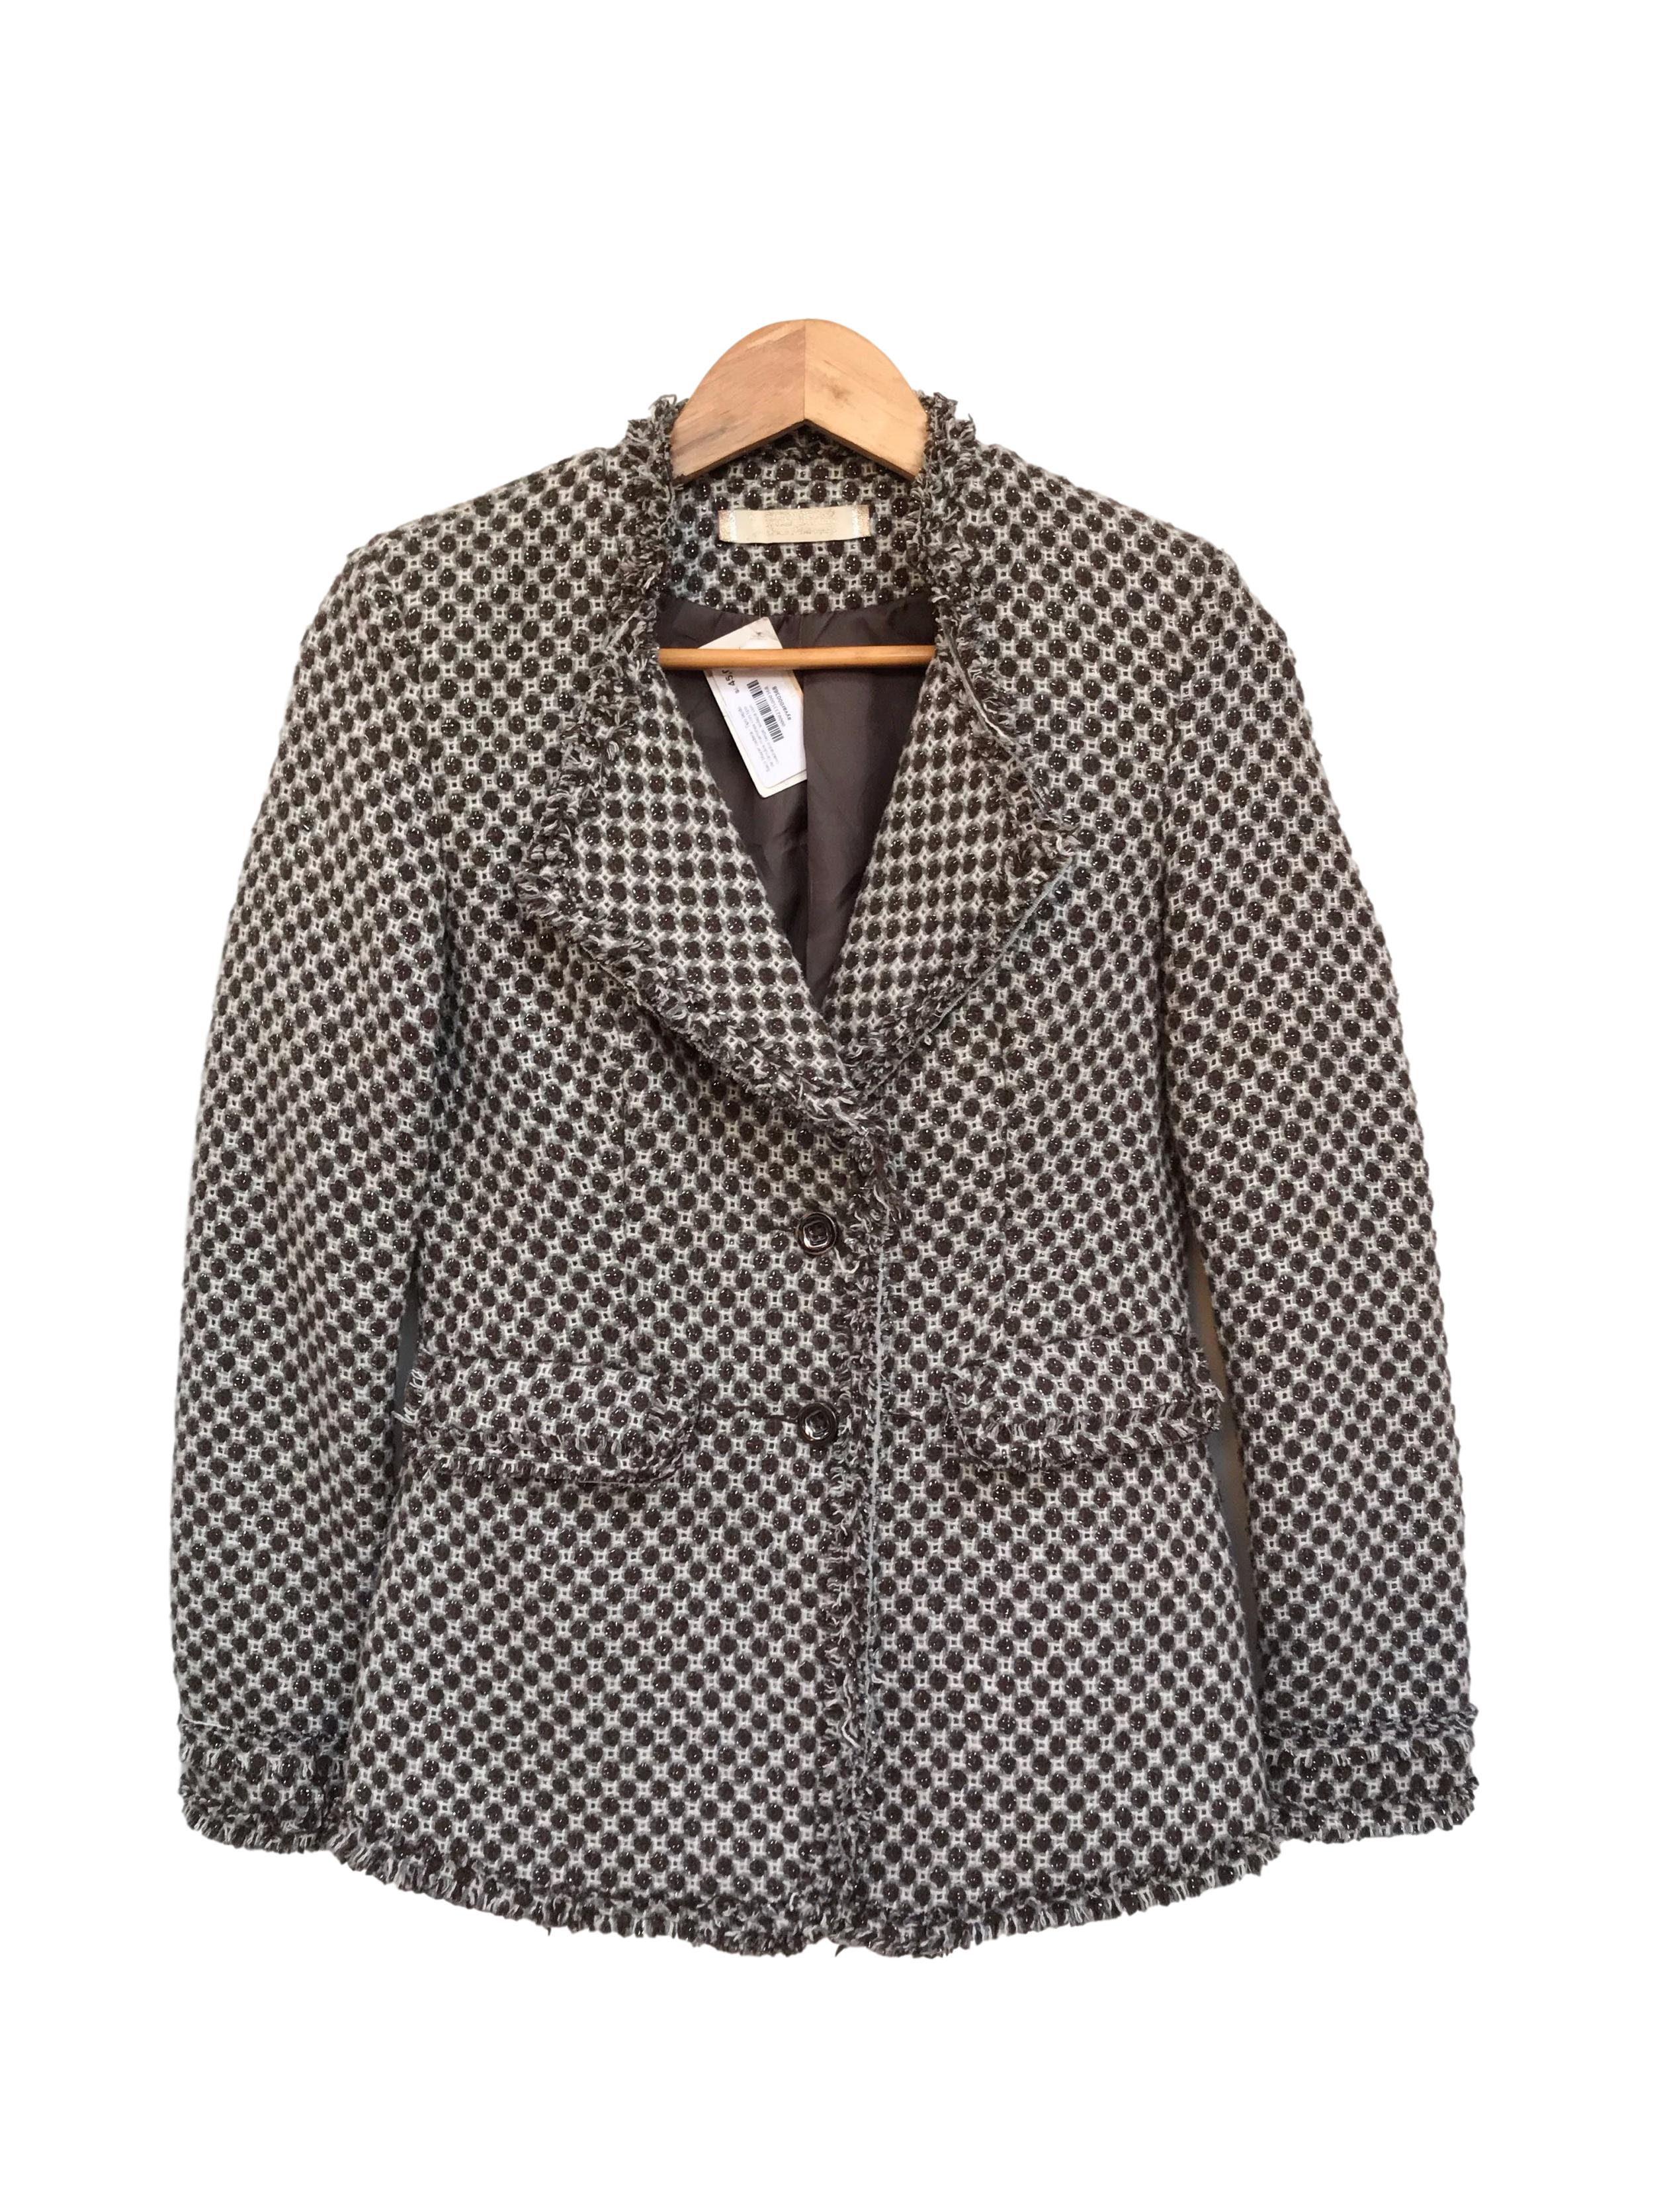 Abrigo tipo tweed marrón, blanco y plomo, forrado, solapas, botones y bolsillos delanteros, detalle de flecos
Talla S (puede ser M chico)